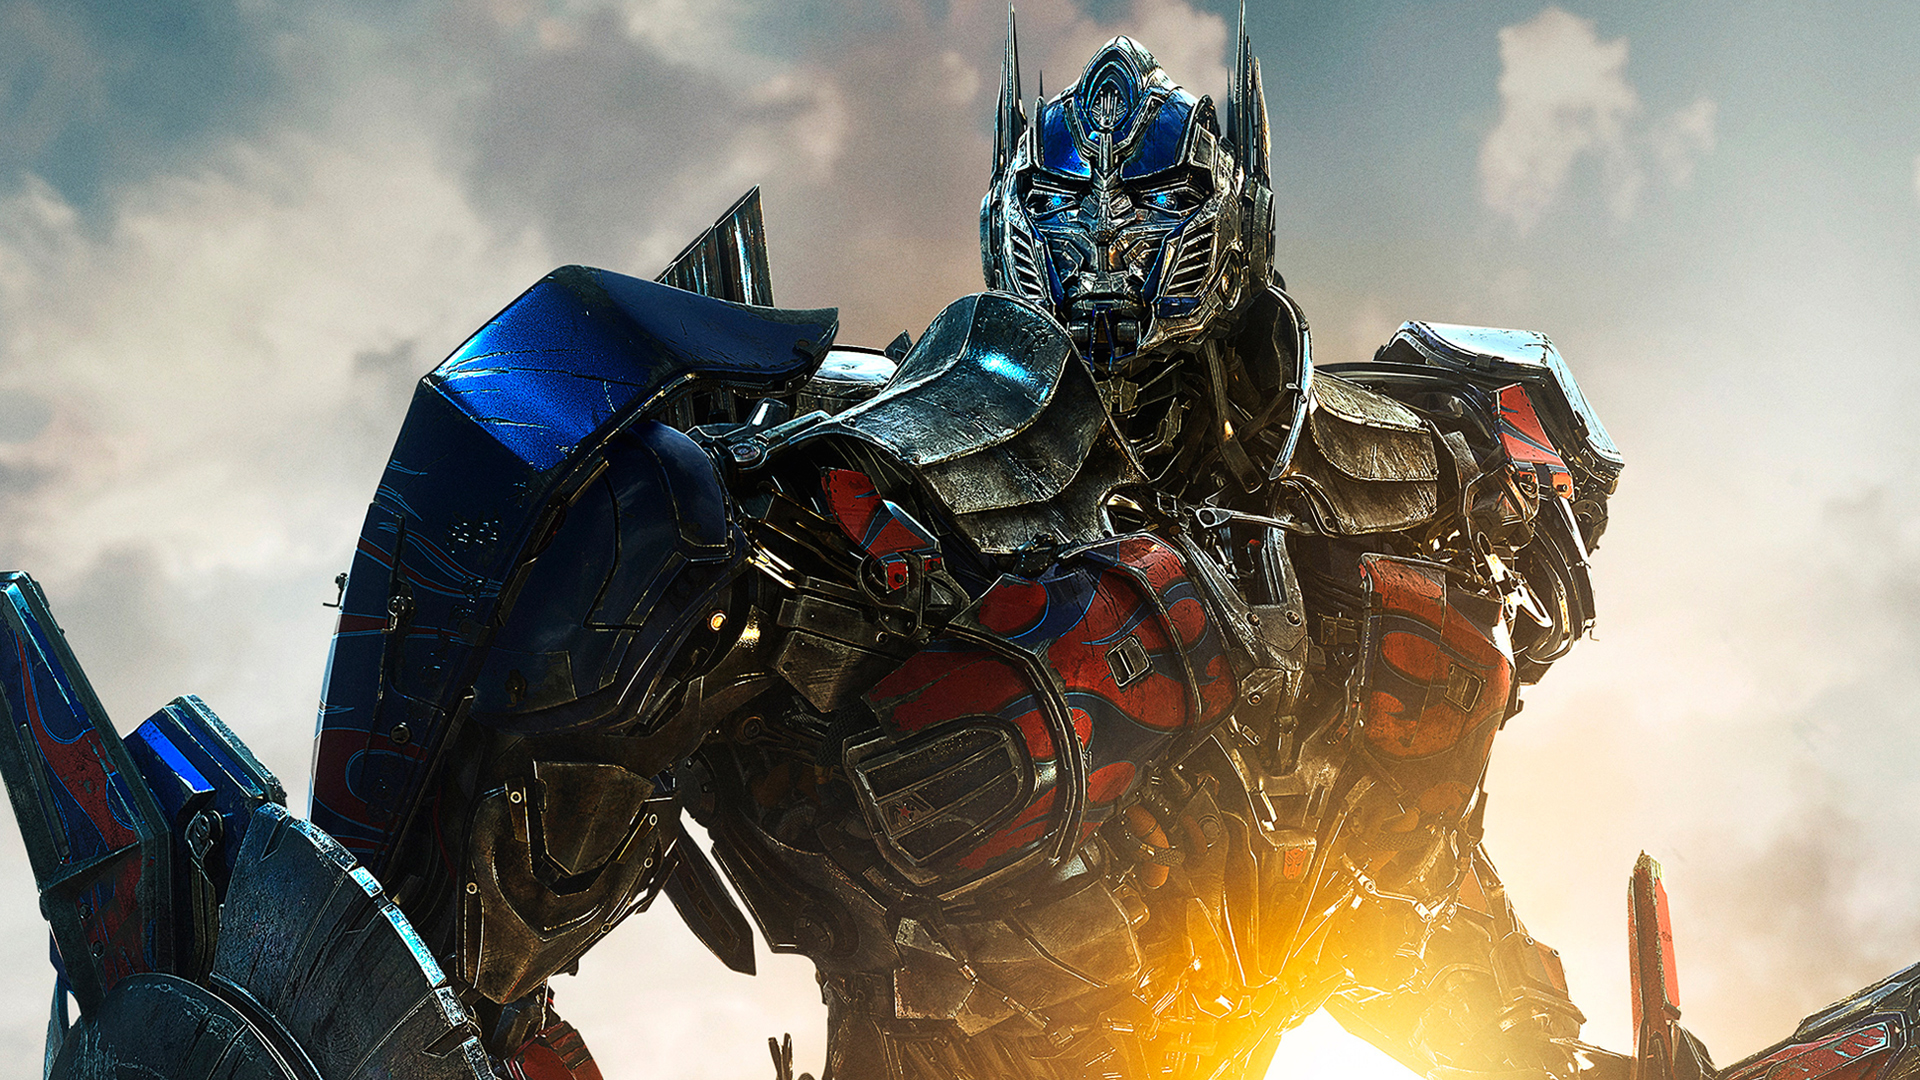 Transformers 4 Wallpaper HD 1080p - WallpaperSafari